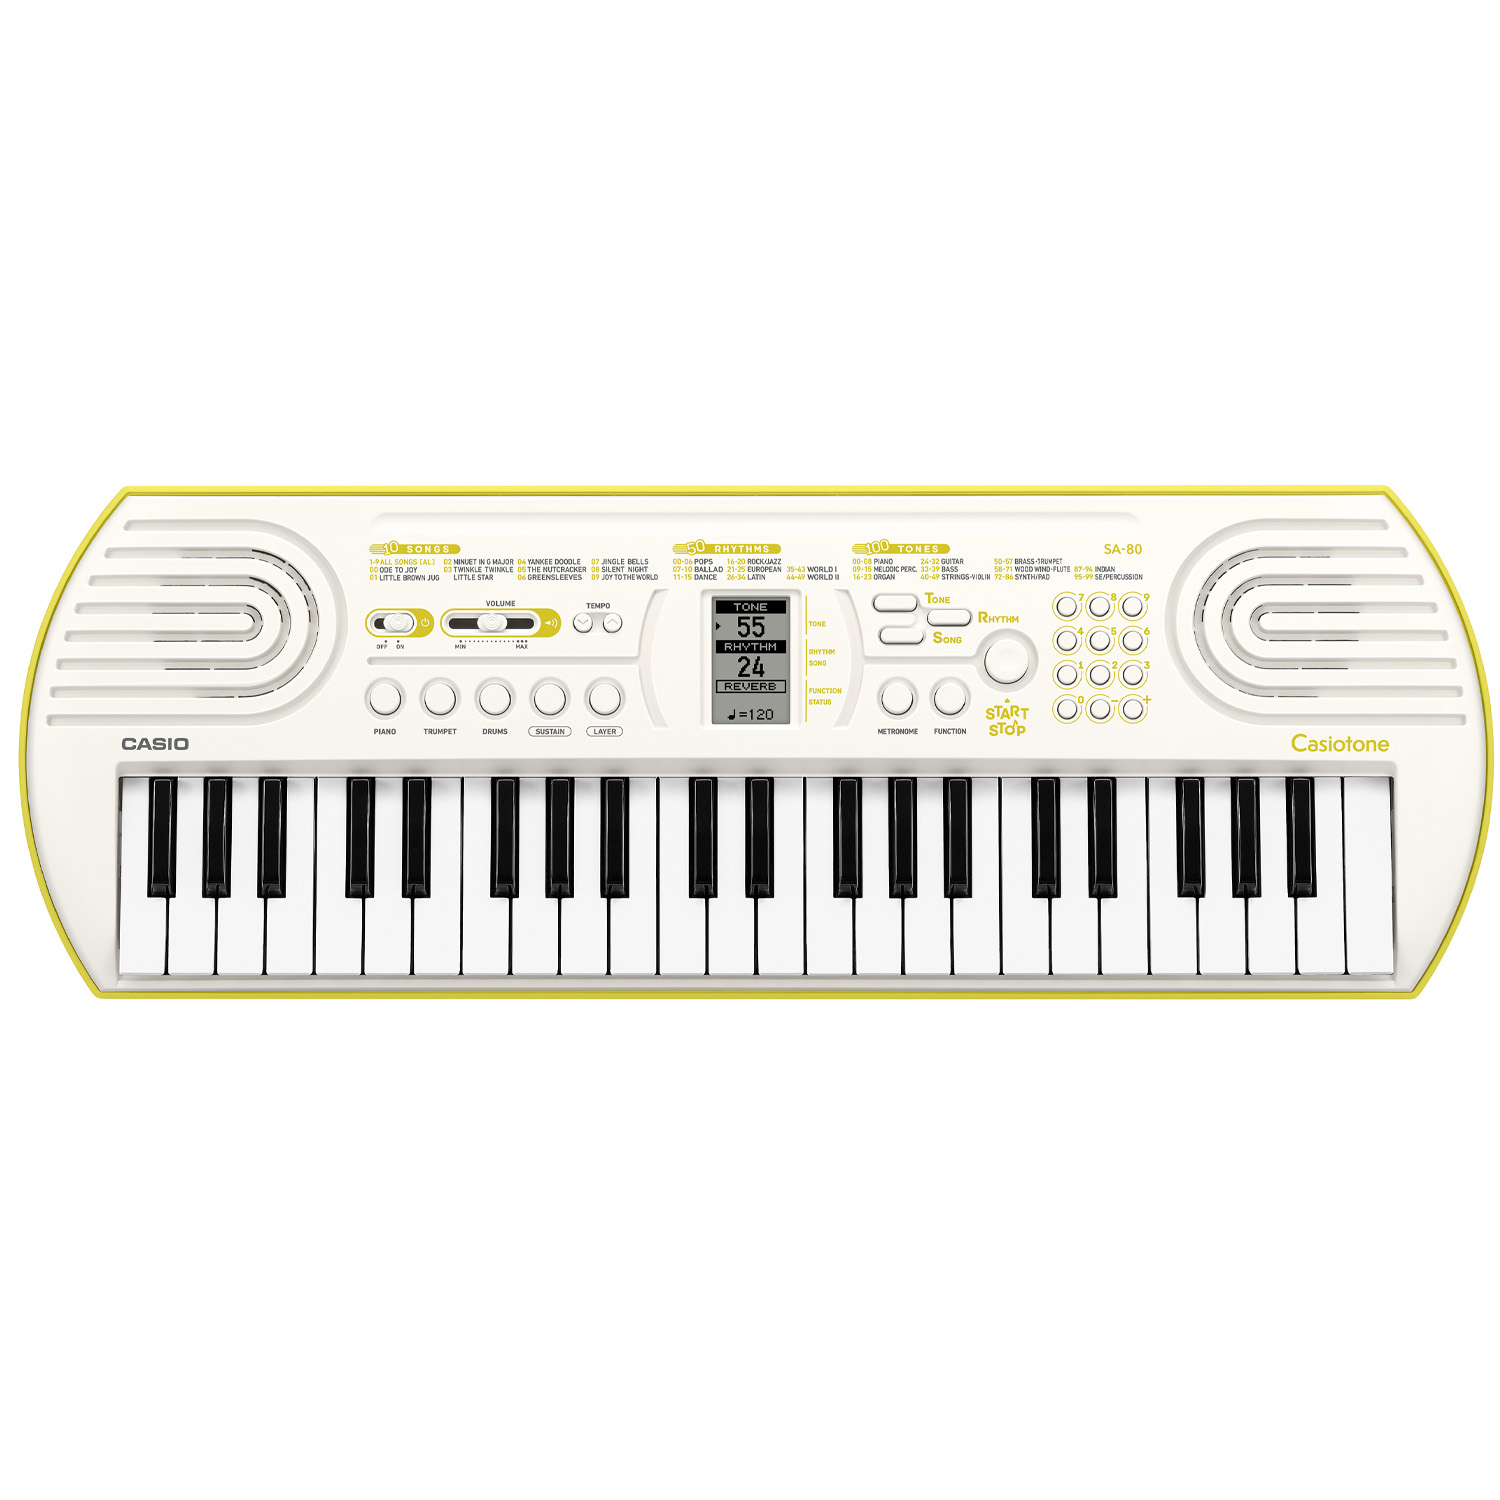 CASIO SA-80 keyboard dla dzieci - główne